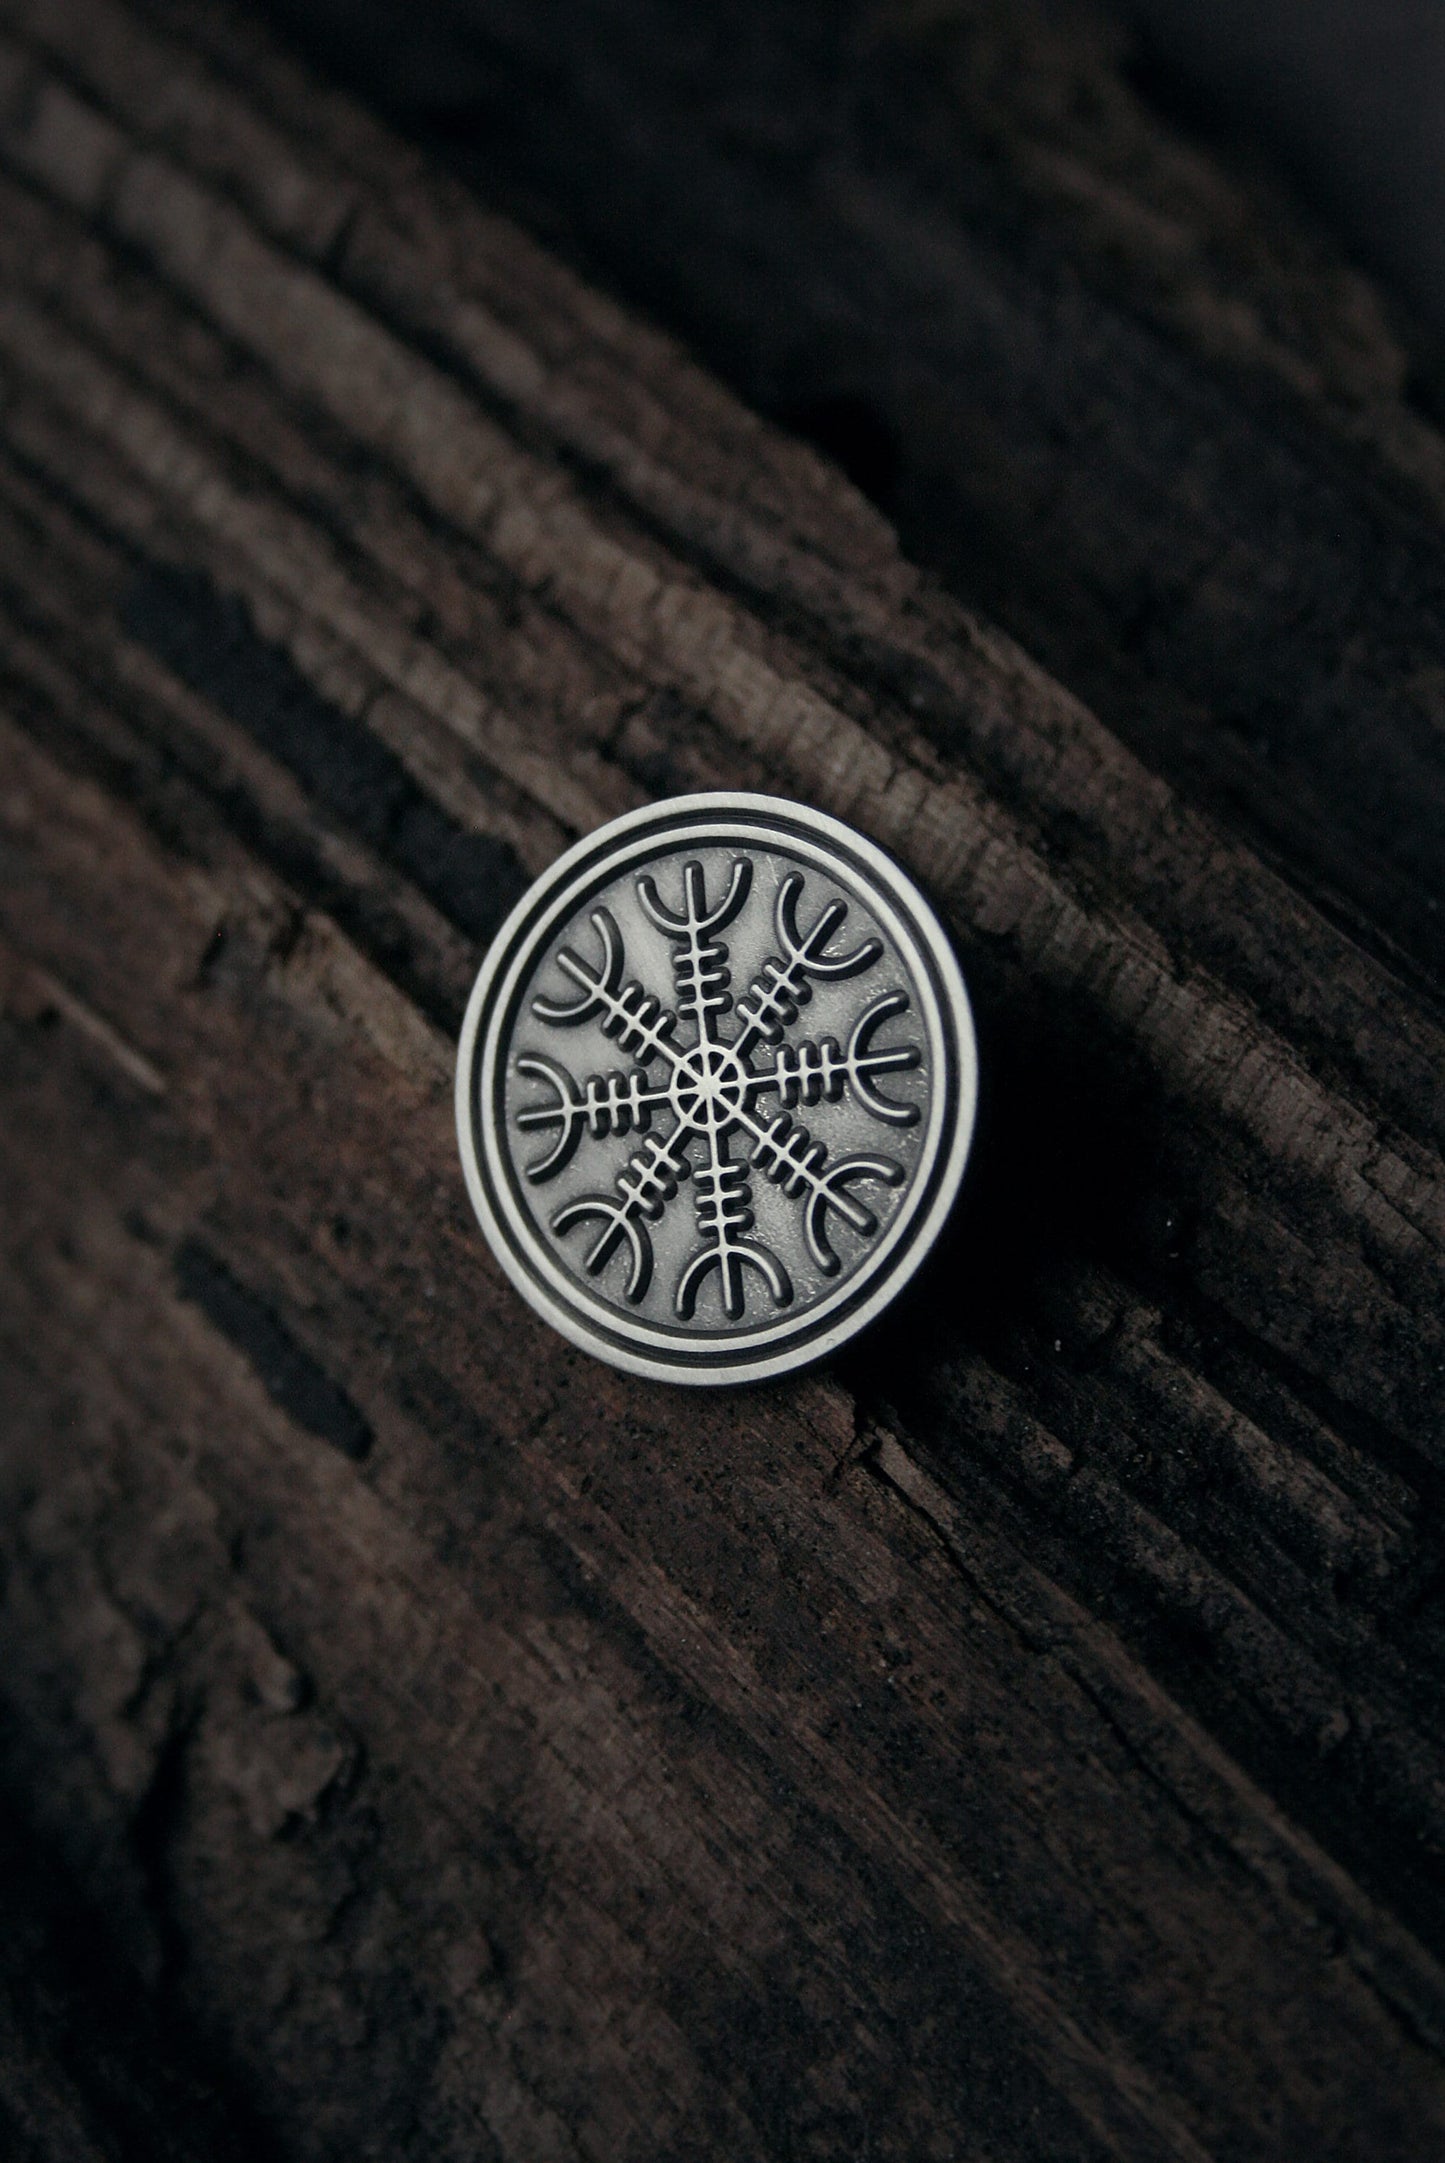 Ægishjálmur, Helm of awe (Aegishjalmr/Aegishjalmur), antique look version - PIN